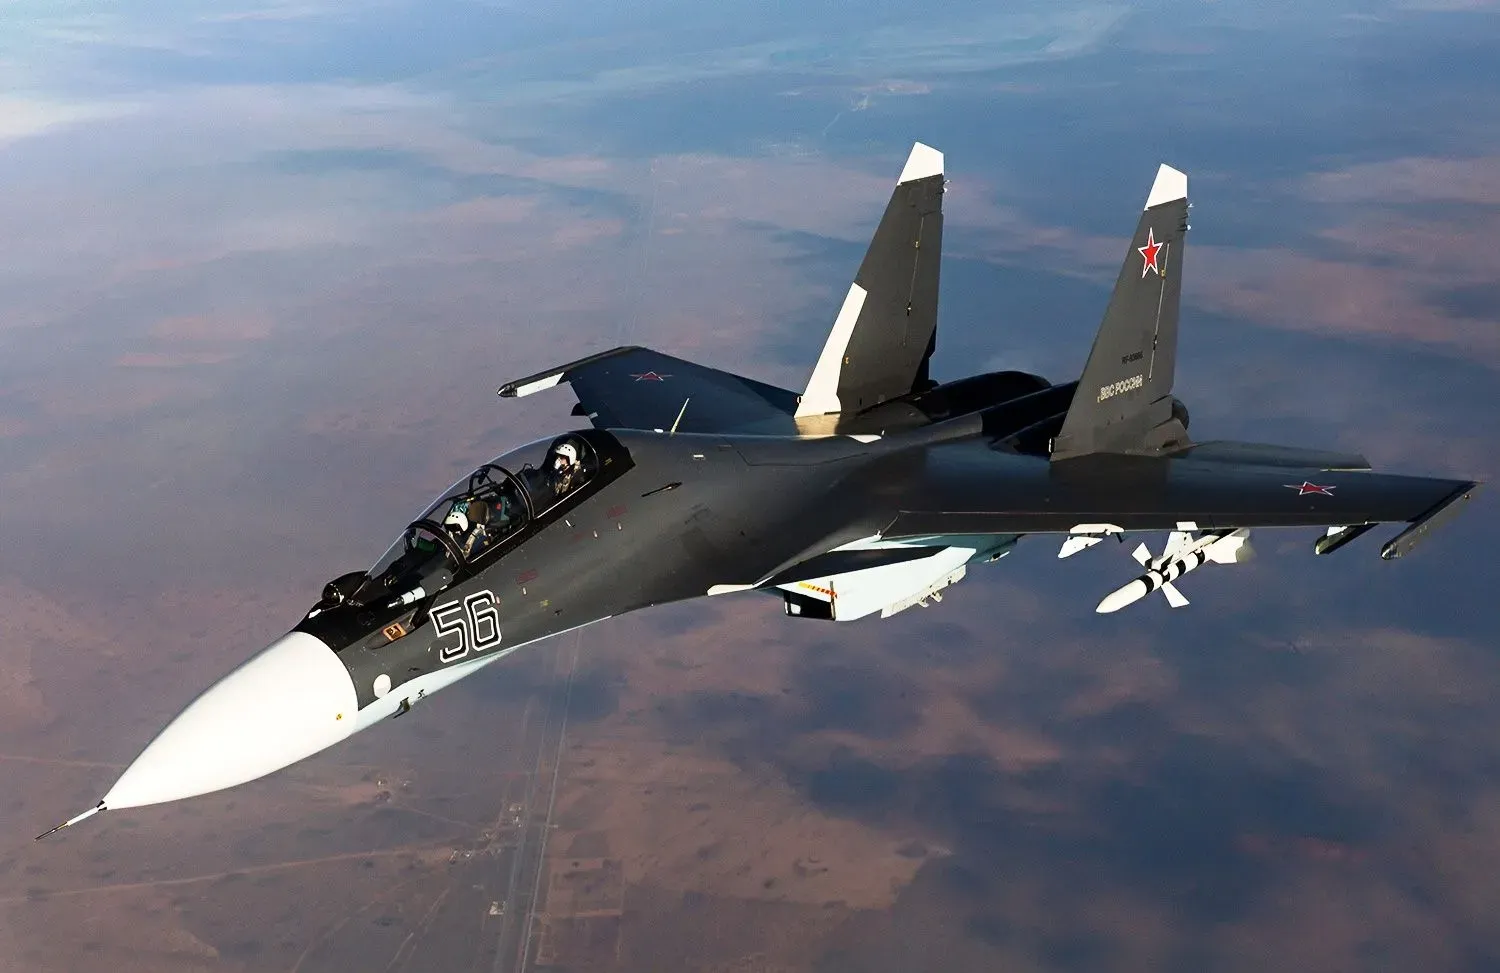 
											
											Россия “Су-35” қирувчи самолётининг иккита эскадронидан айрилди
											
											